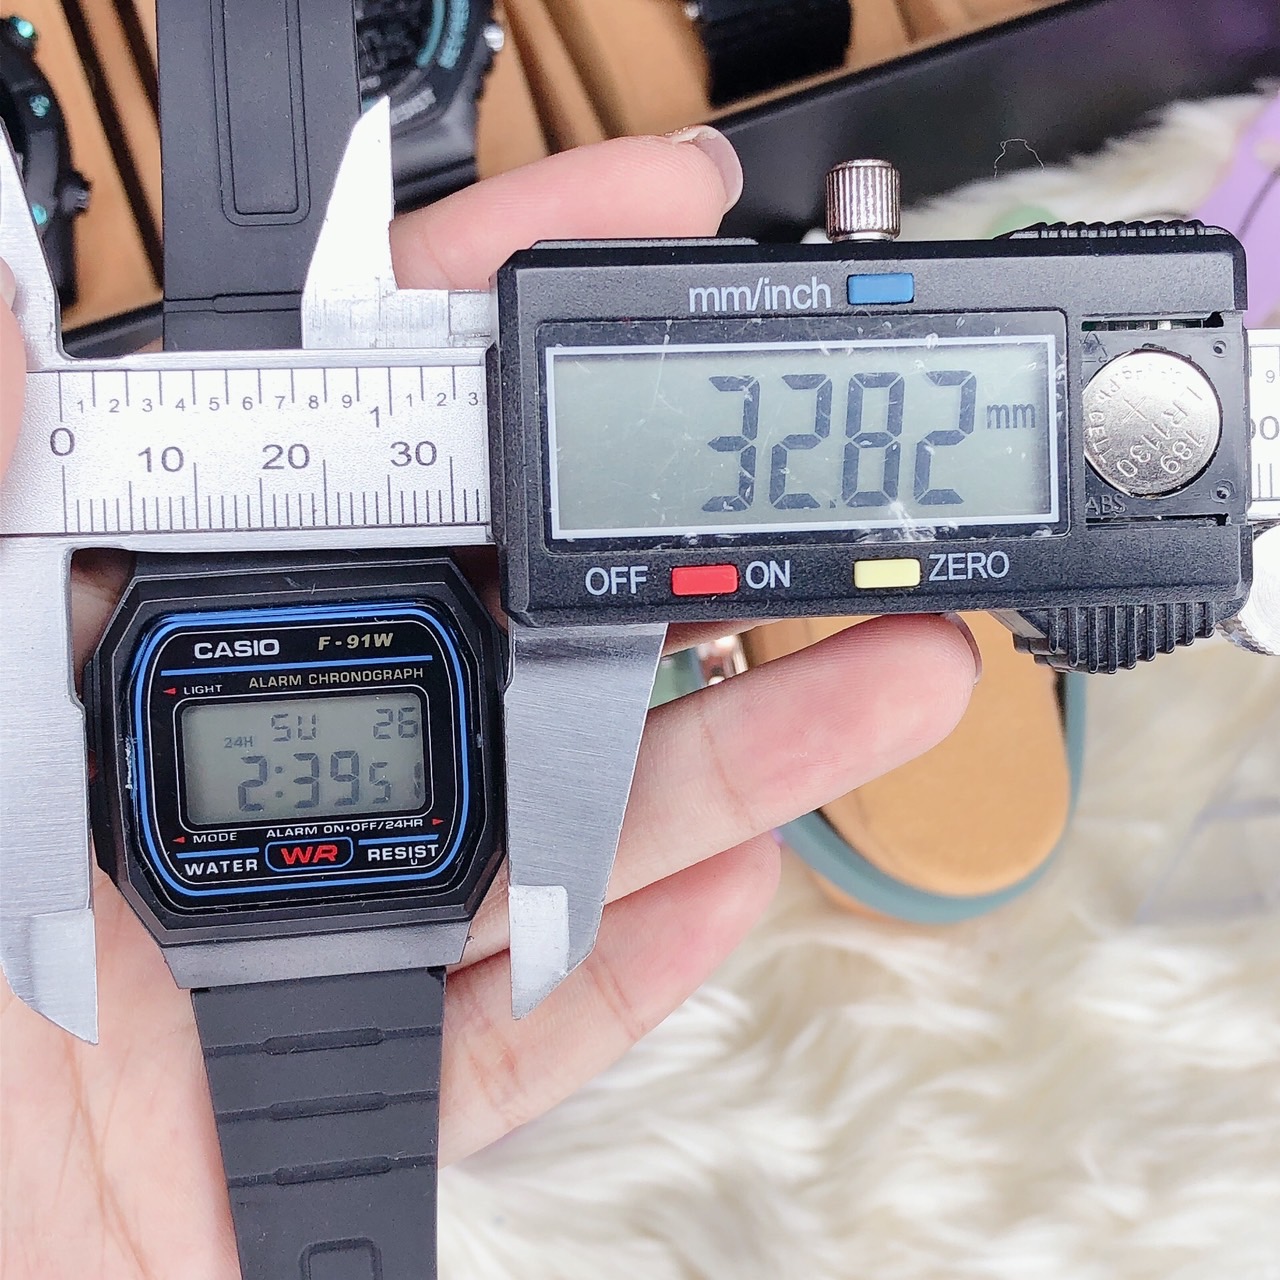 นาฬิกาลำลอง Sale!! นาฬิกาข้อมือคาสิโอ้ ดิจิตอล สายยางเรซิ่น ตั้งปลุก จับเวลาได้ แถมกล่องฟรี พร้อมส่งในไทย